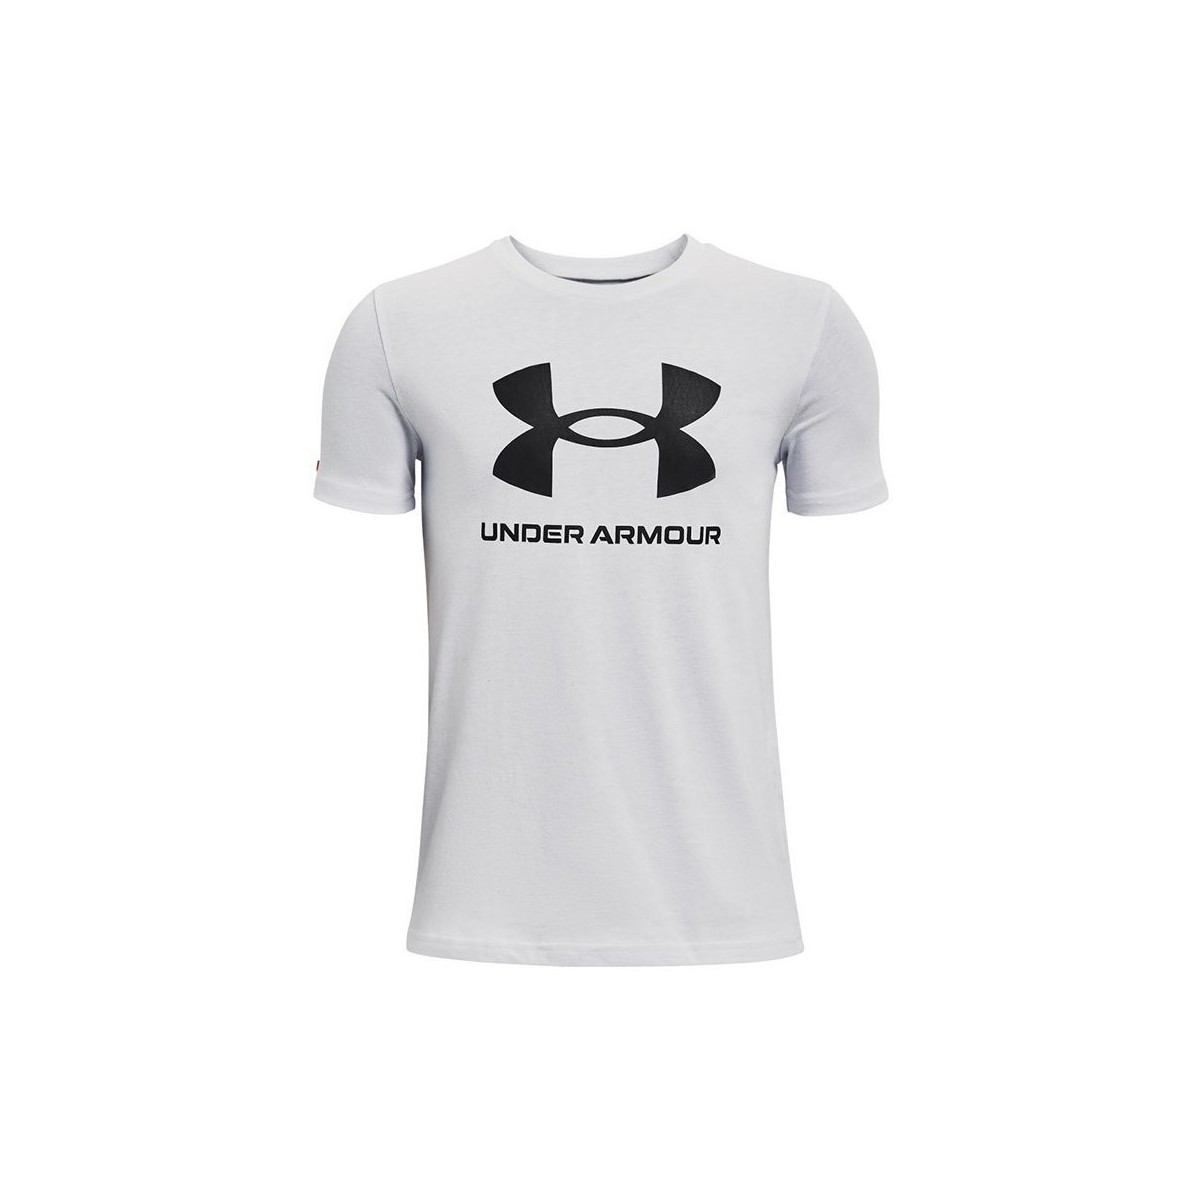 Vêtements Homme T-shirts manches courtes Under Armour Sportstyle Logo Blanc